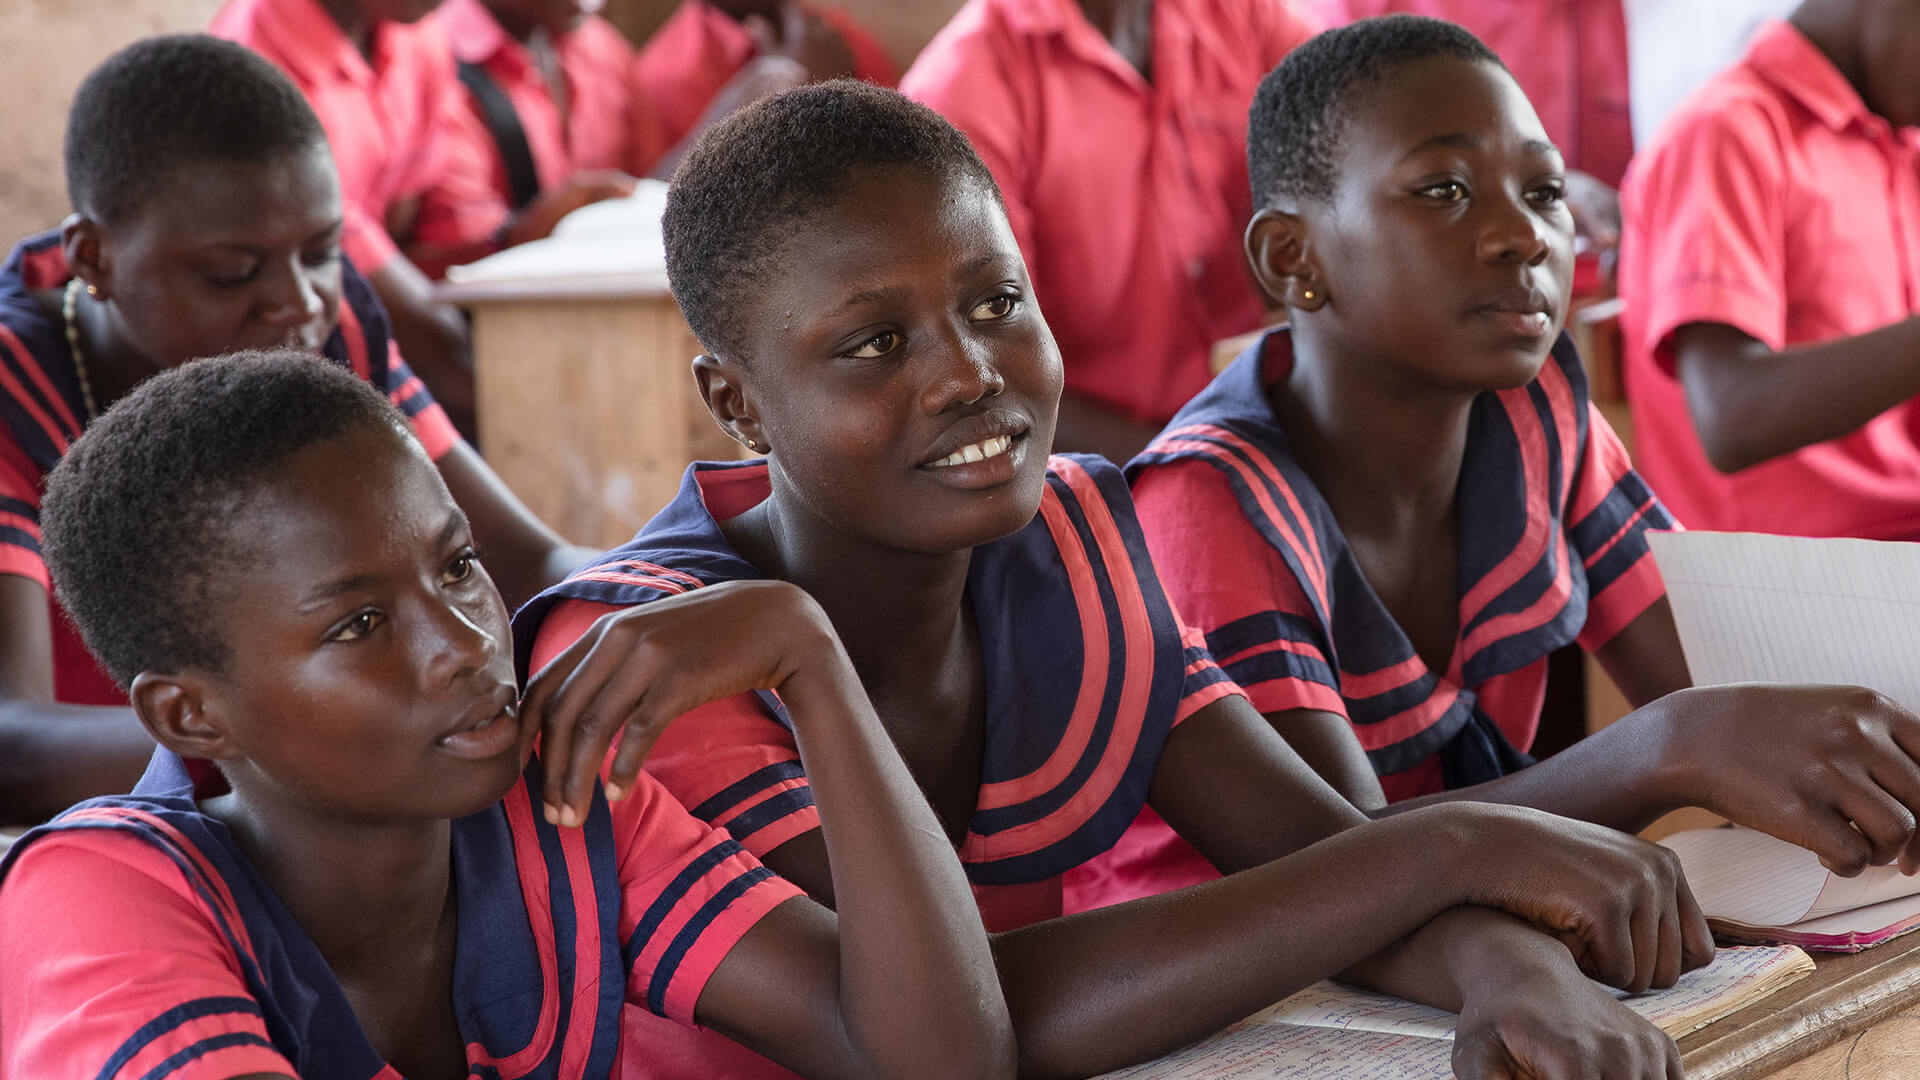 Reilu kauppa ry tekee kehitysyhteistyötä Ghanassa lapsien oikeuksiin liittyen. Kuvassa koululaisia Ghanassa, jossa Reilun kaupan lisää on käytetty koulun rakentamiseen.